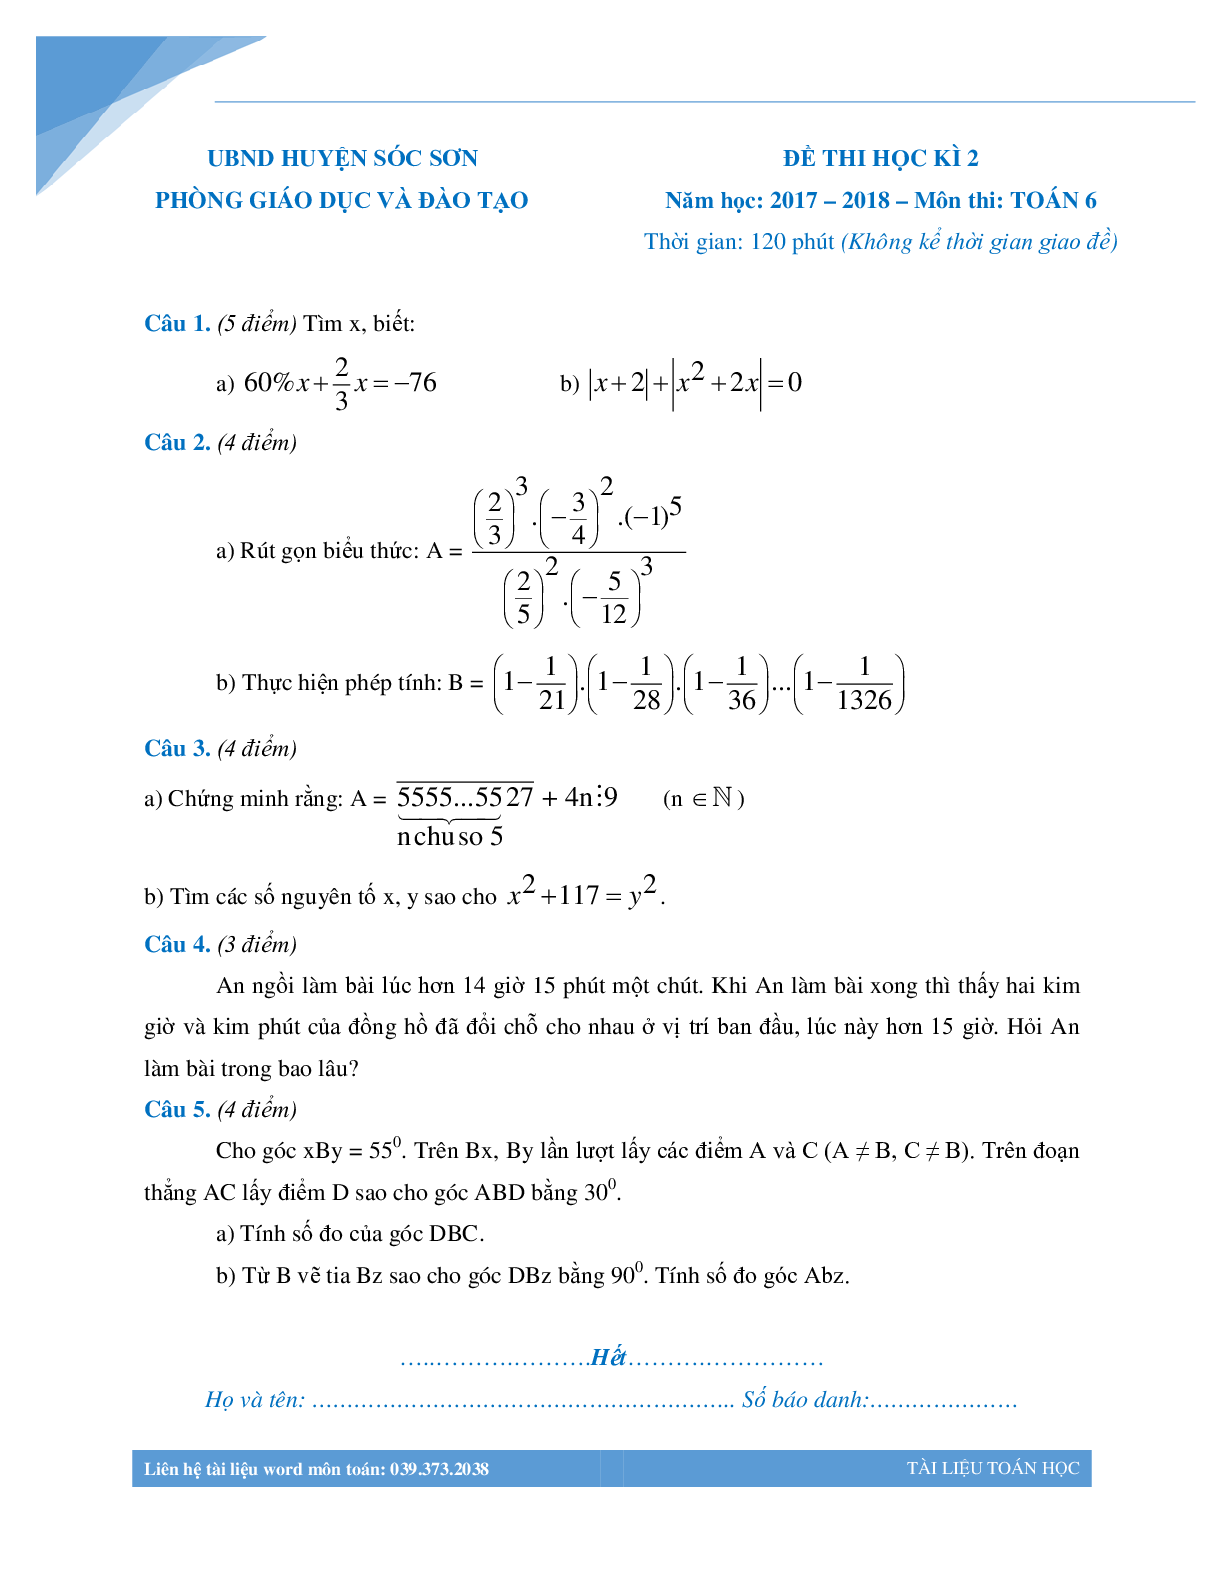 Bộ đề thi học kì 2 môn toán lớp 6 các trường Hà Nội (trang 9)